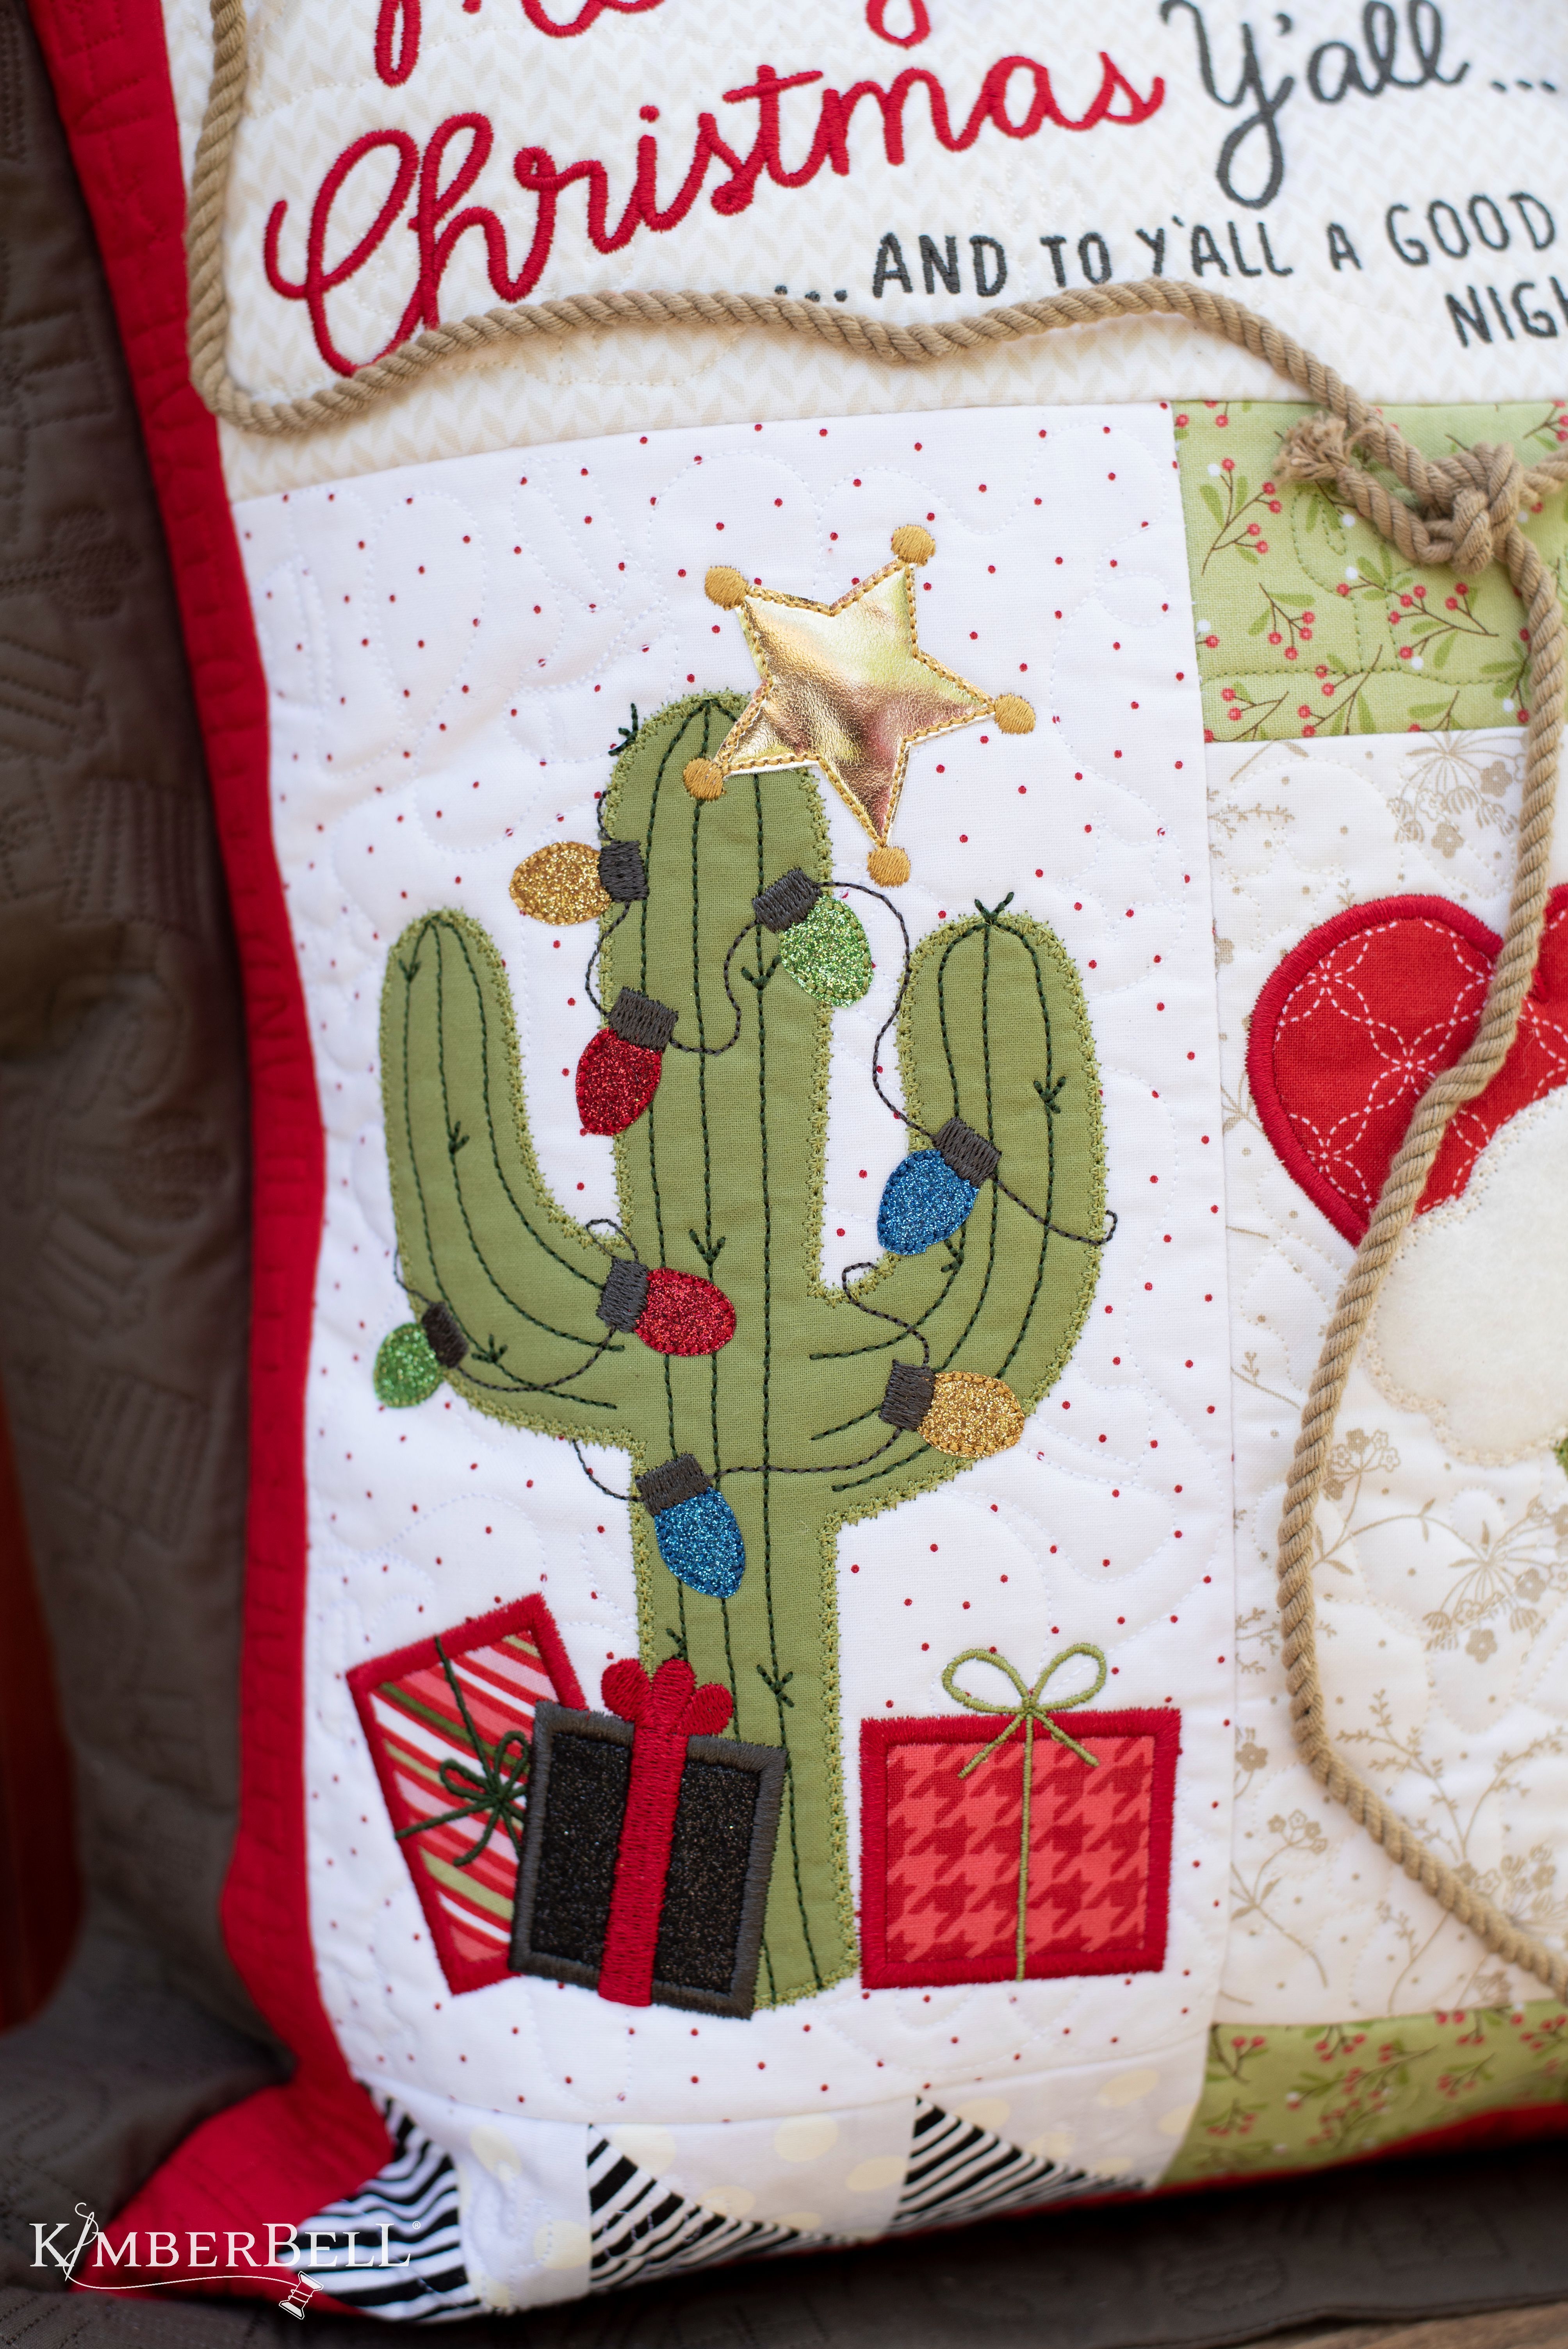 Merry Christmas Yall-Cactus